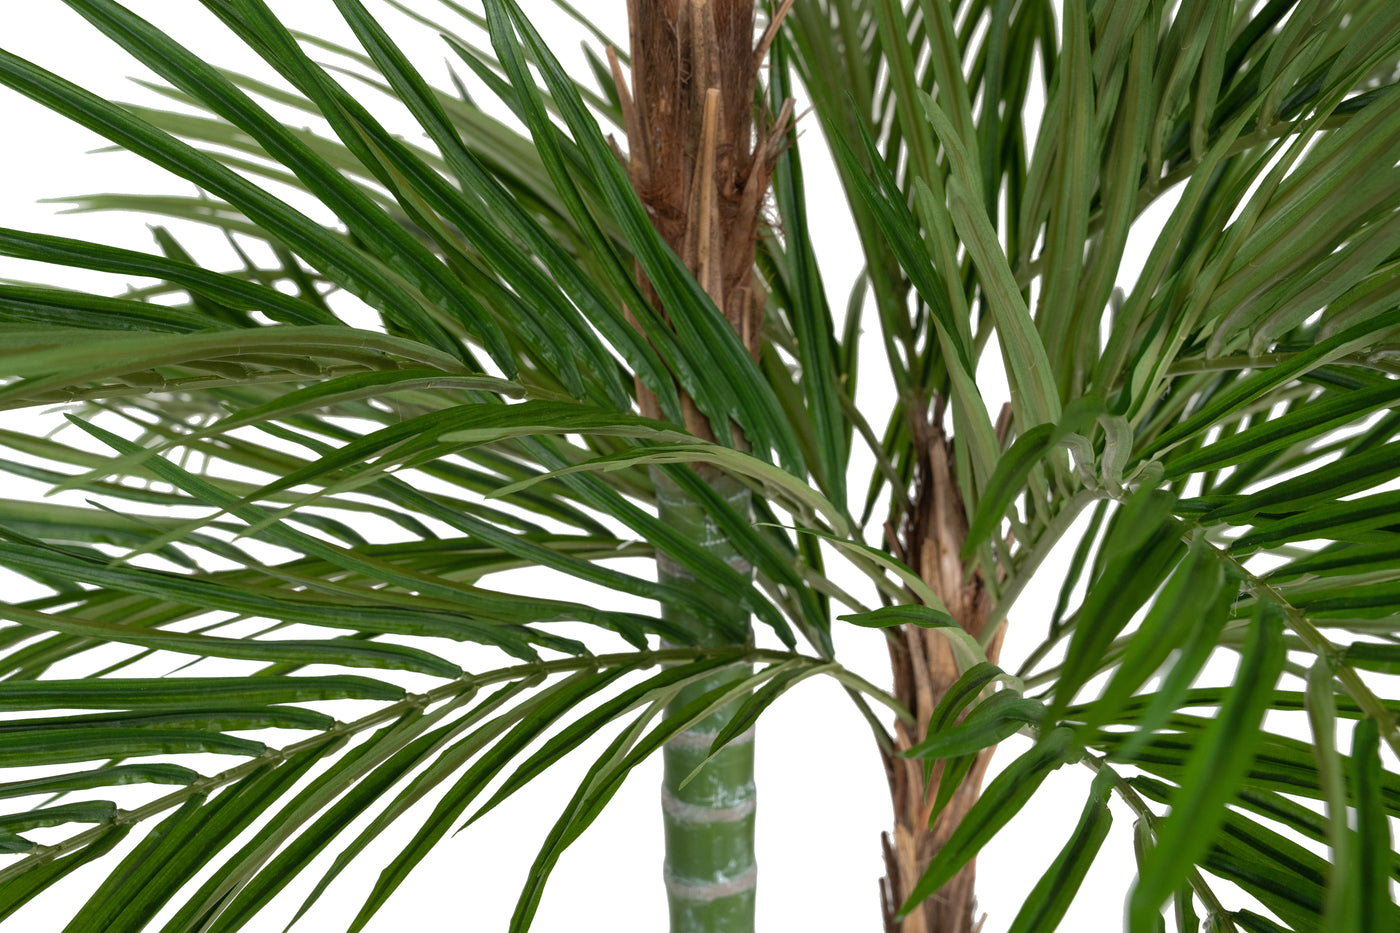 Palm artificial H240cm Areca De Luxe cu 2 trunchiuri